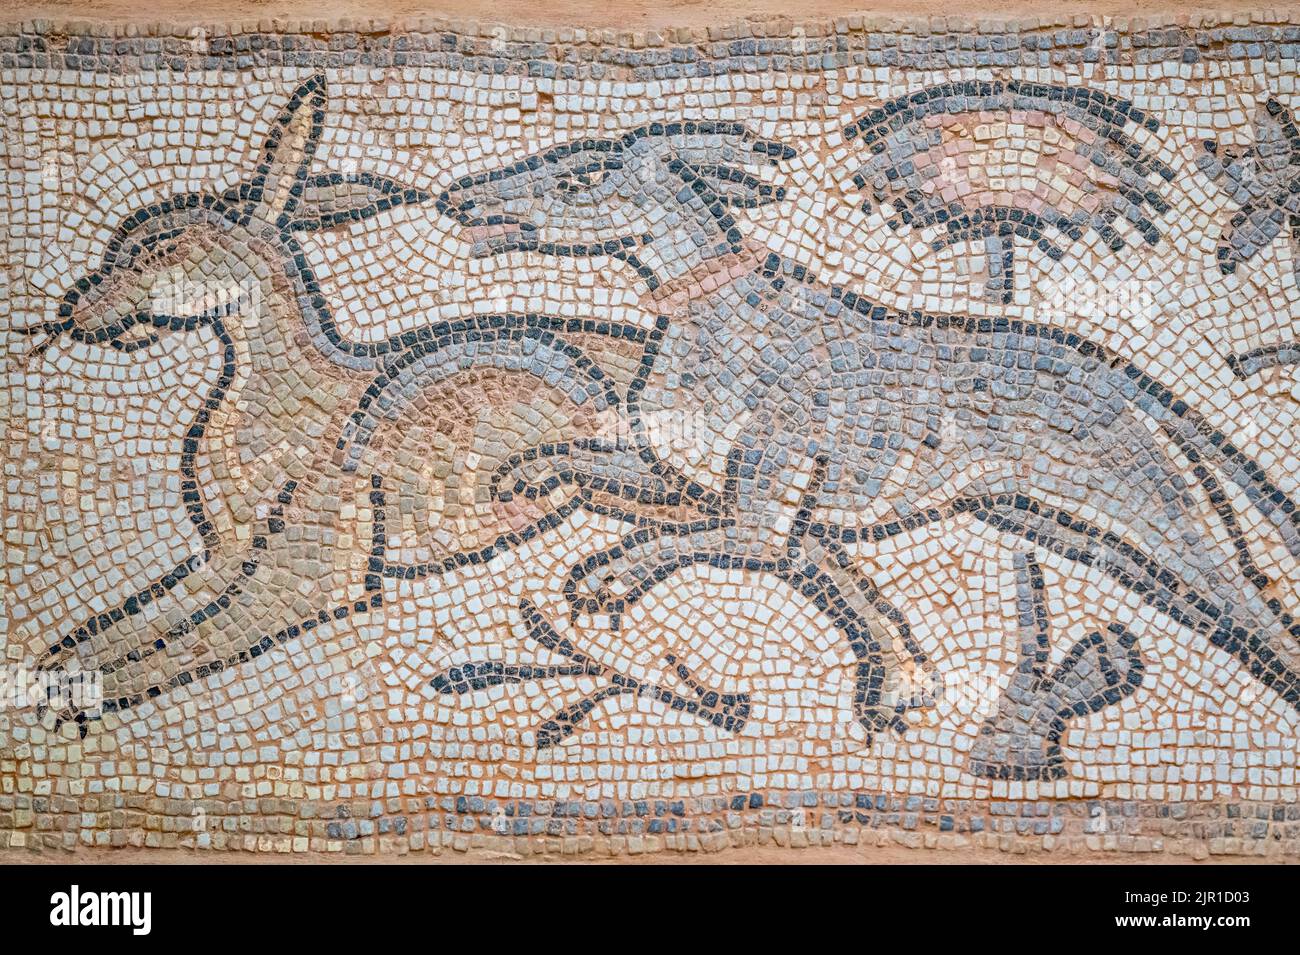 Bodenmosaik aus Kalkstein und Tesserae. Ein Stück aus Syrien und datiert etwa in die Jahre 350-400 n. Chr. Gegenstand gesehen in der Royal Ontario Mus Stockfoto